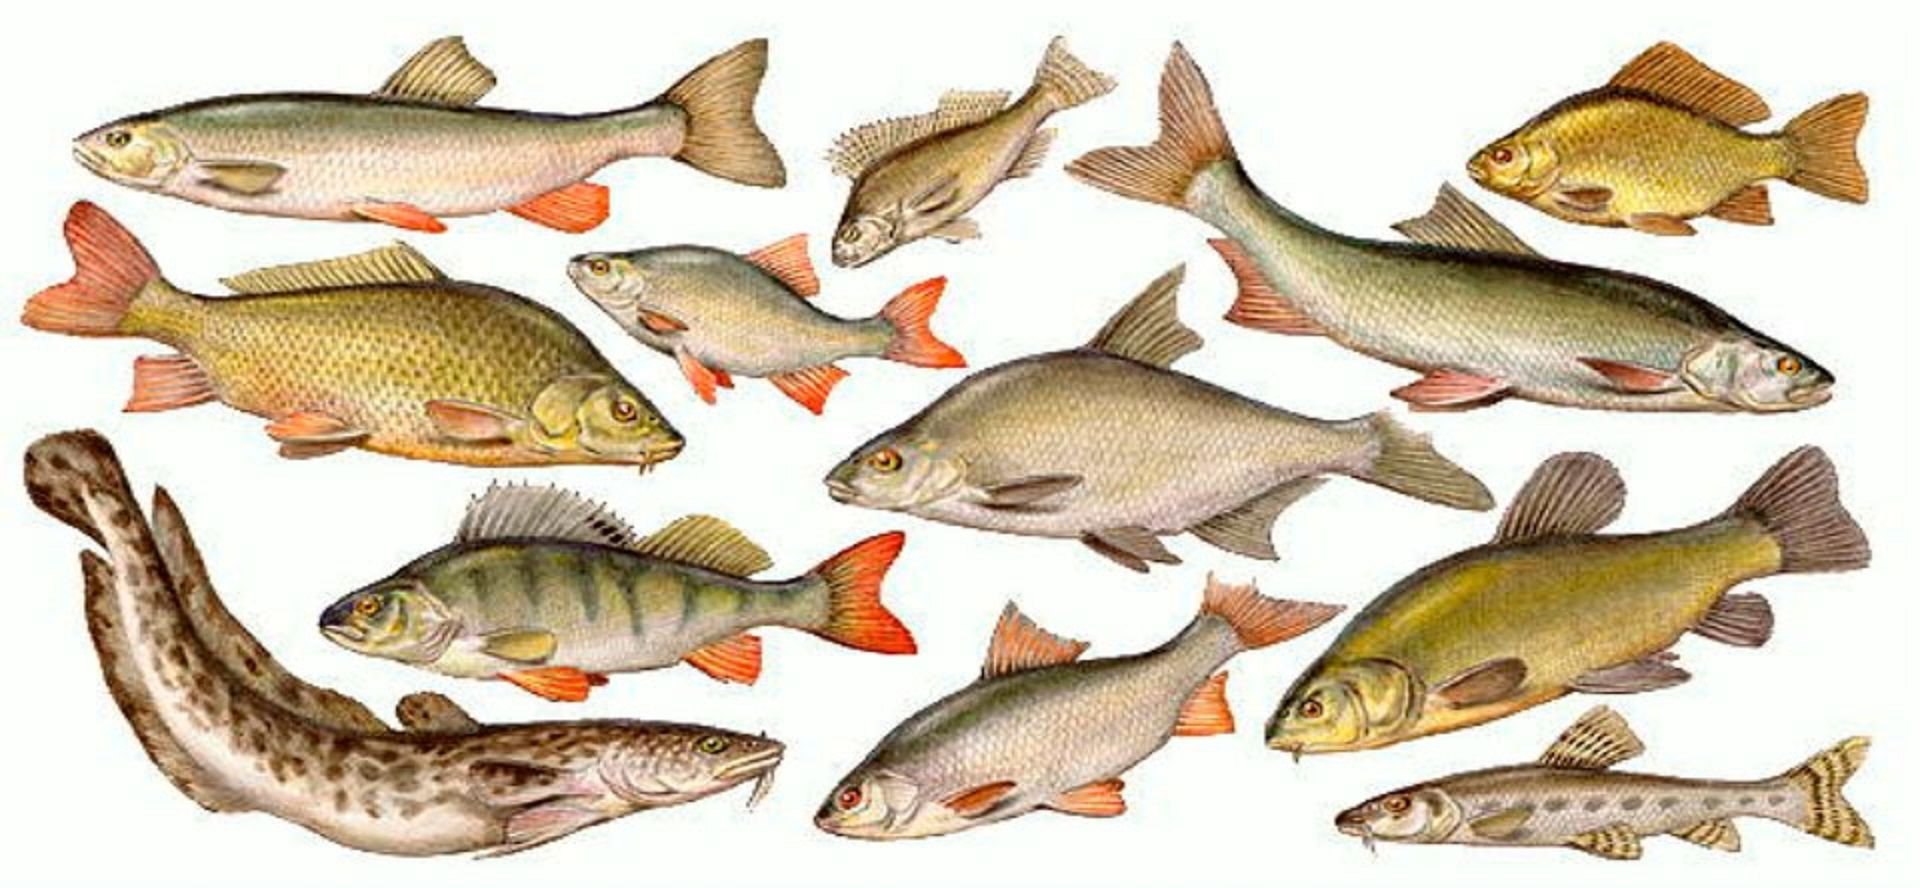 Рыба которая водится в озерах. Речные рыбы. Рыбы России. Пресноводные озерные рыбы. Рыбки речные и озерные.